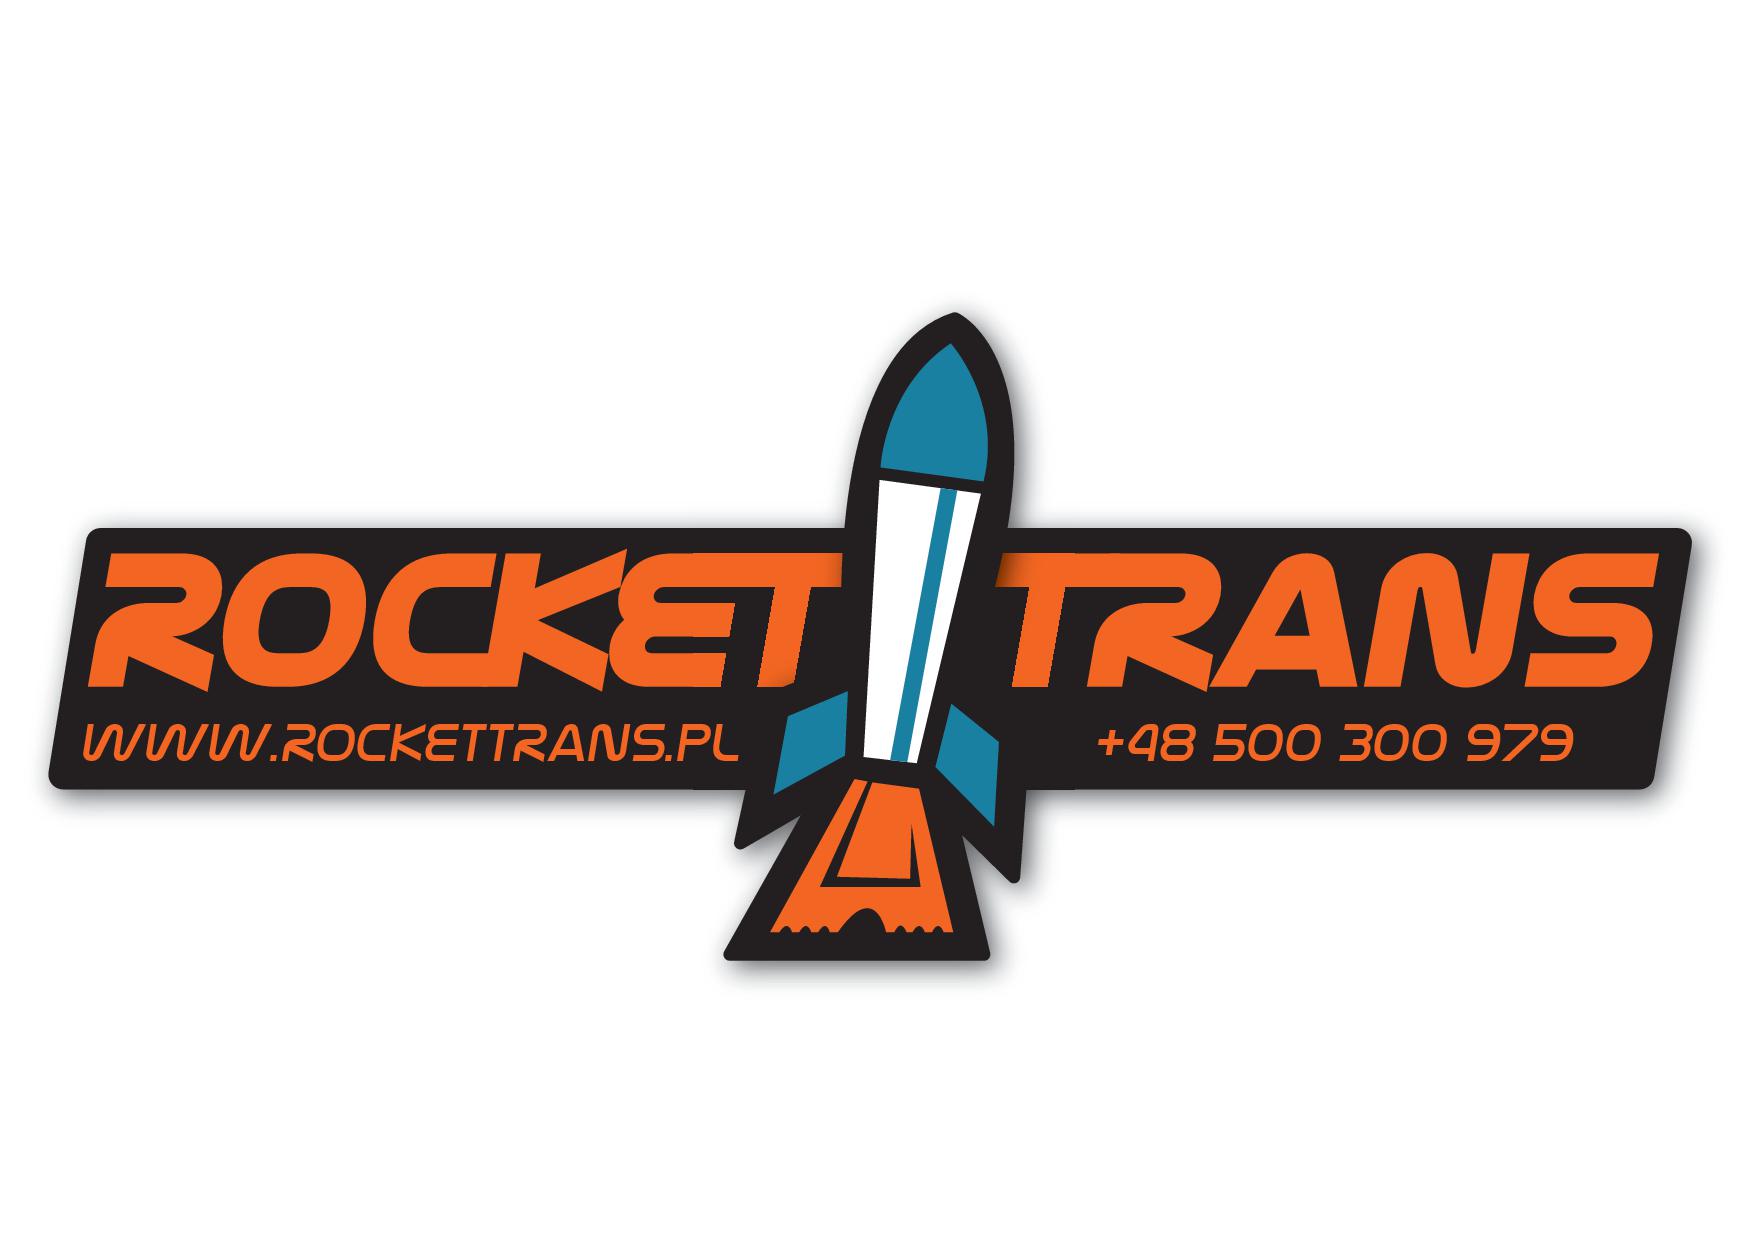 RocketTrans